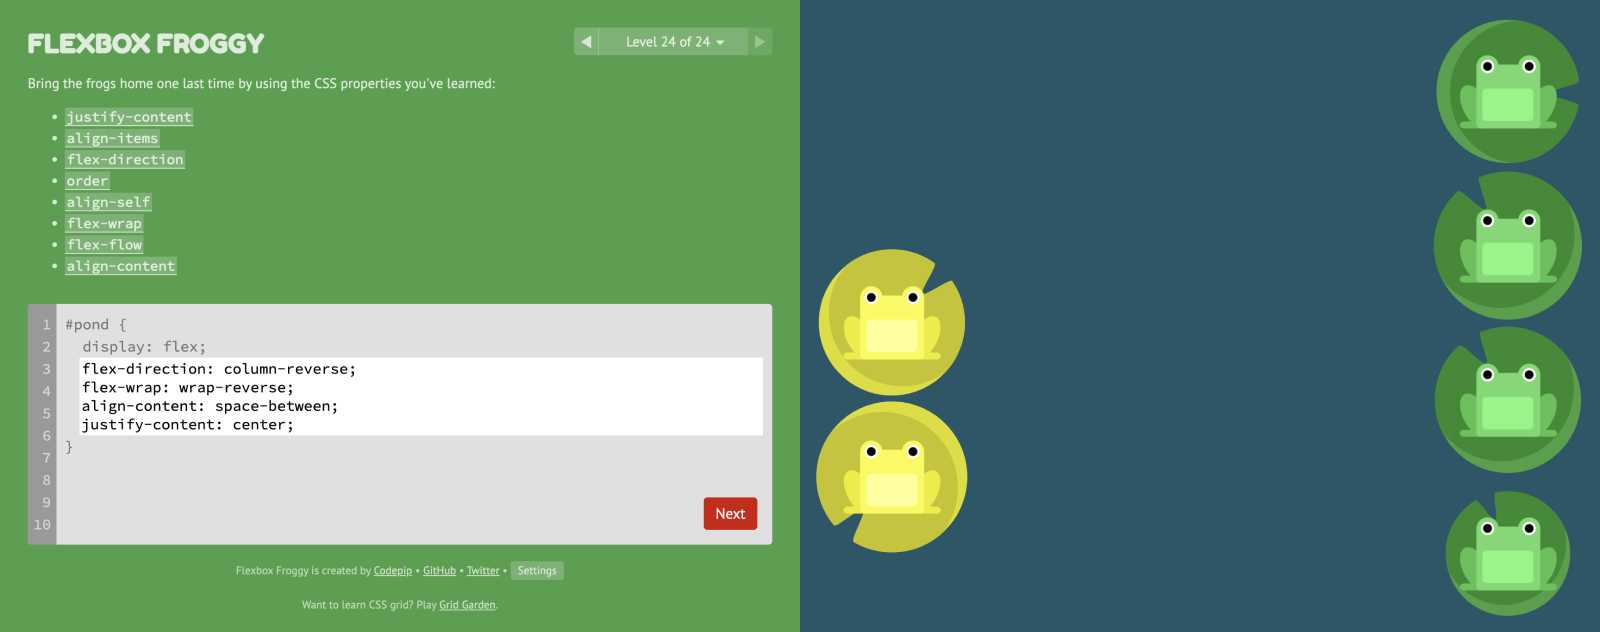 Flexbox froggy jeu pour apprendre le CSS